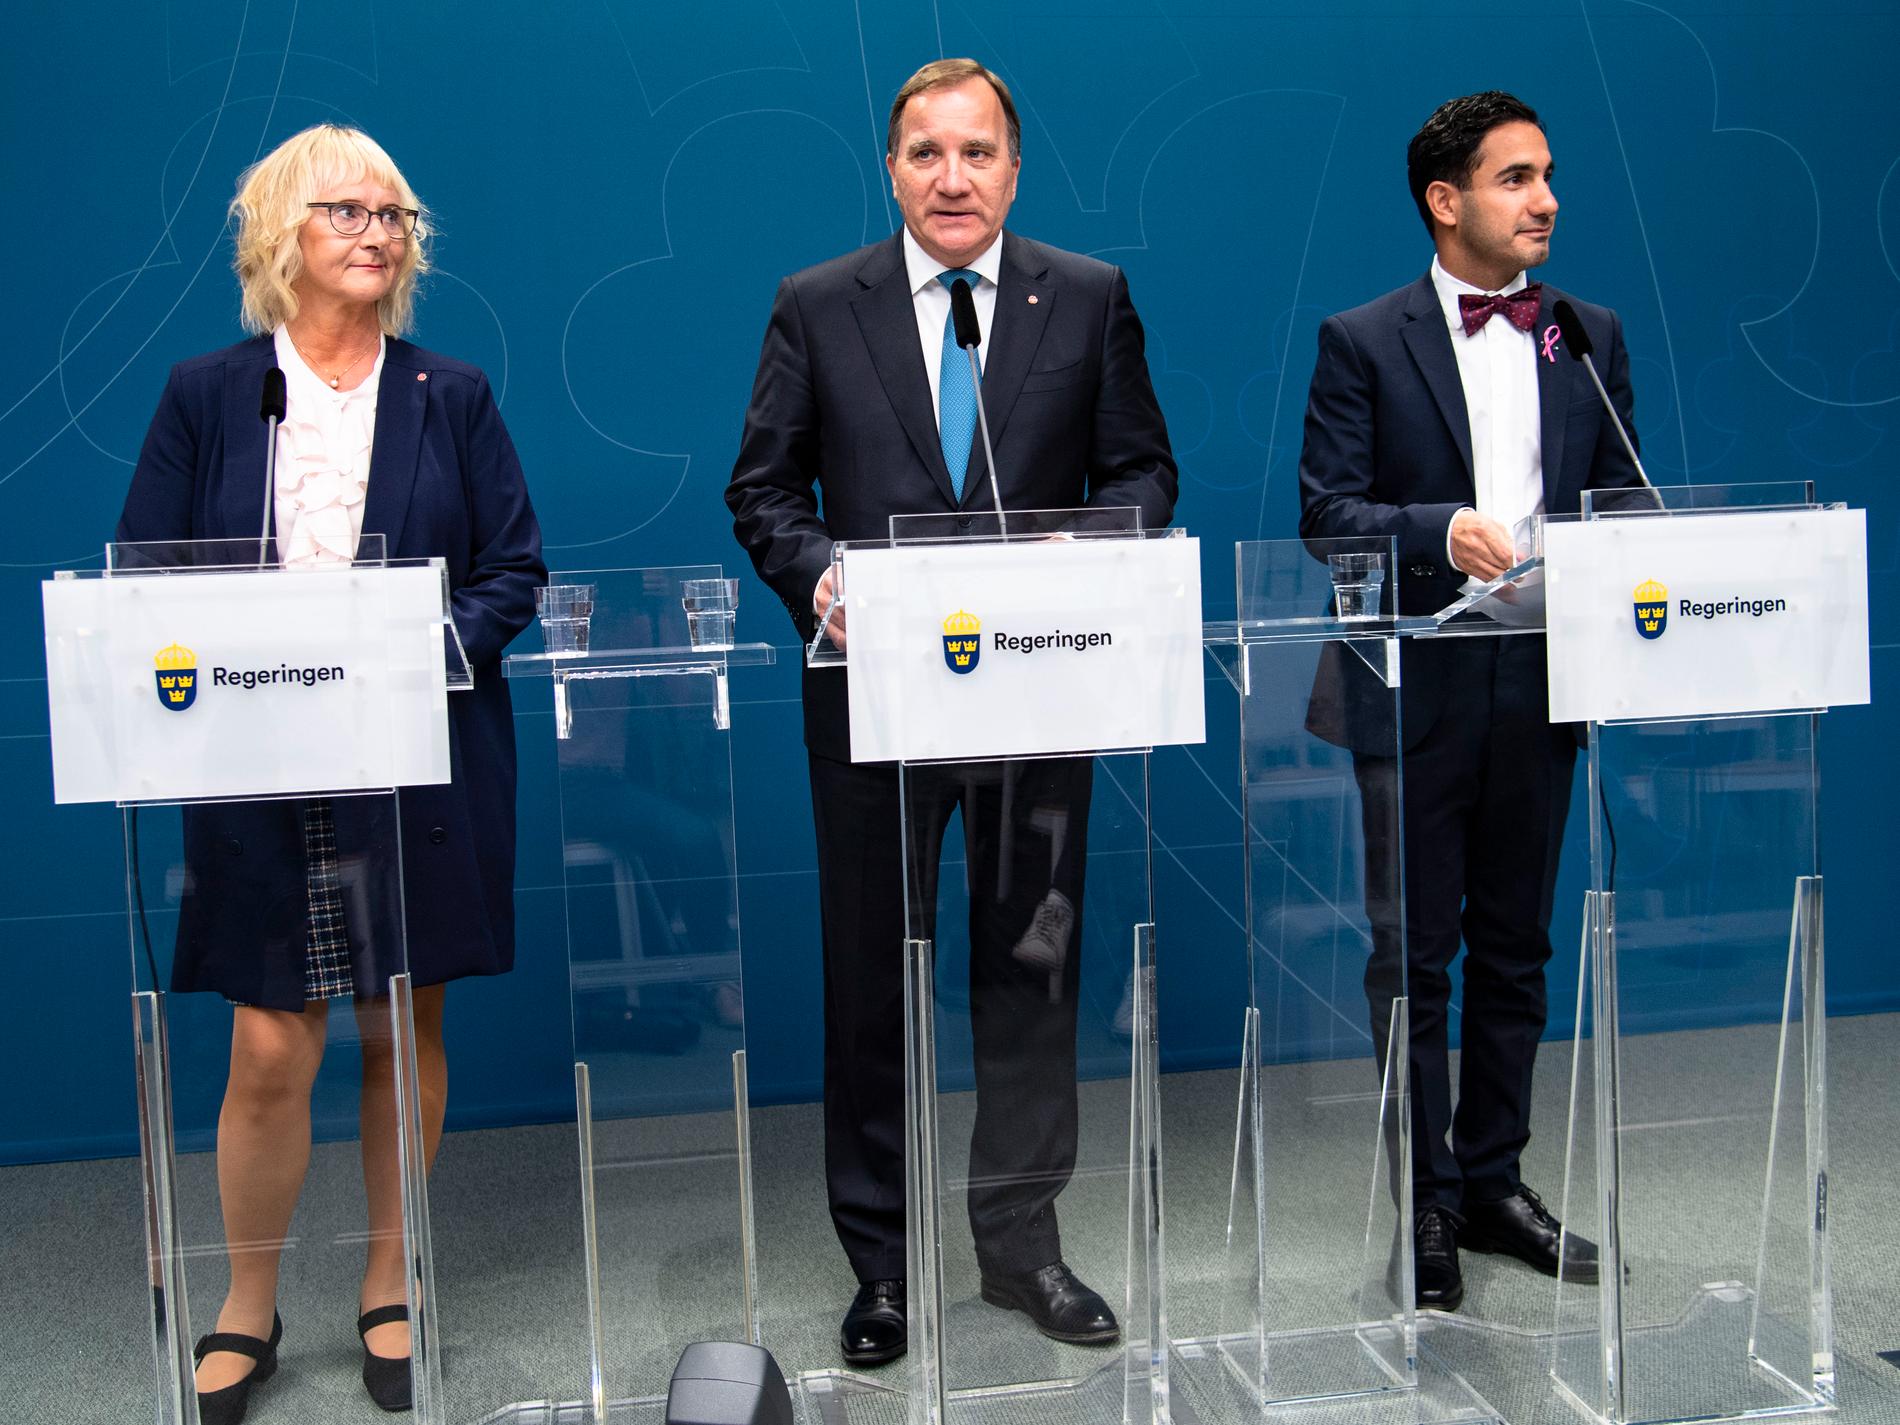 Lena Micko, ny civilminister, statsminister Stefan Löfven och Ardalan Shekarabi, ny socialförsäkringsminister.